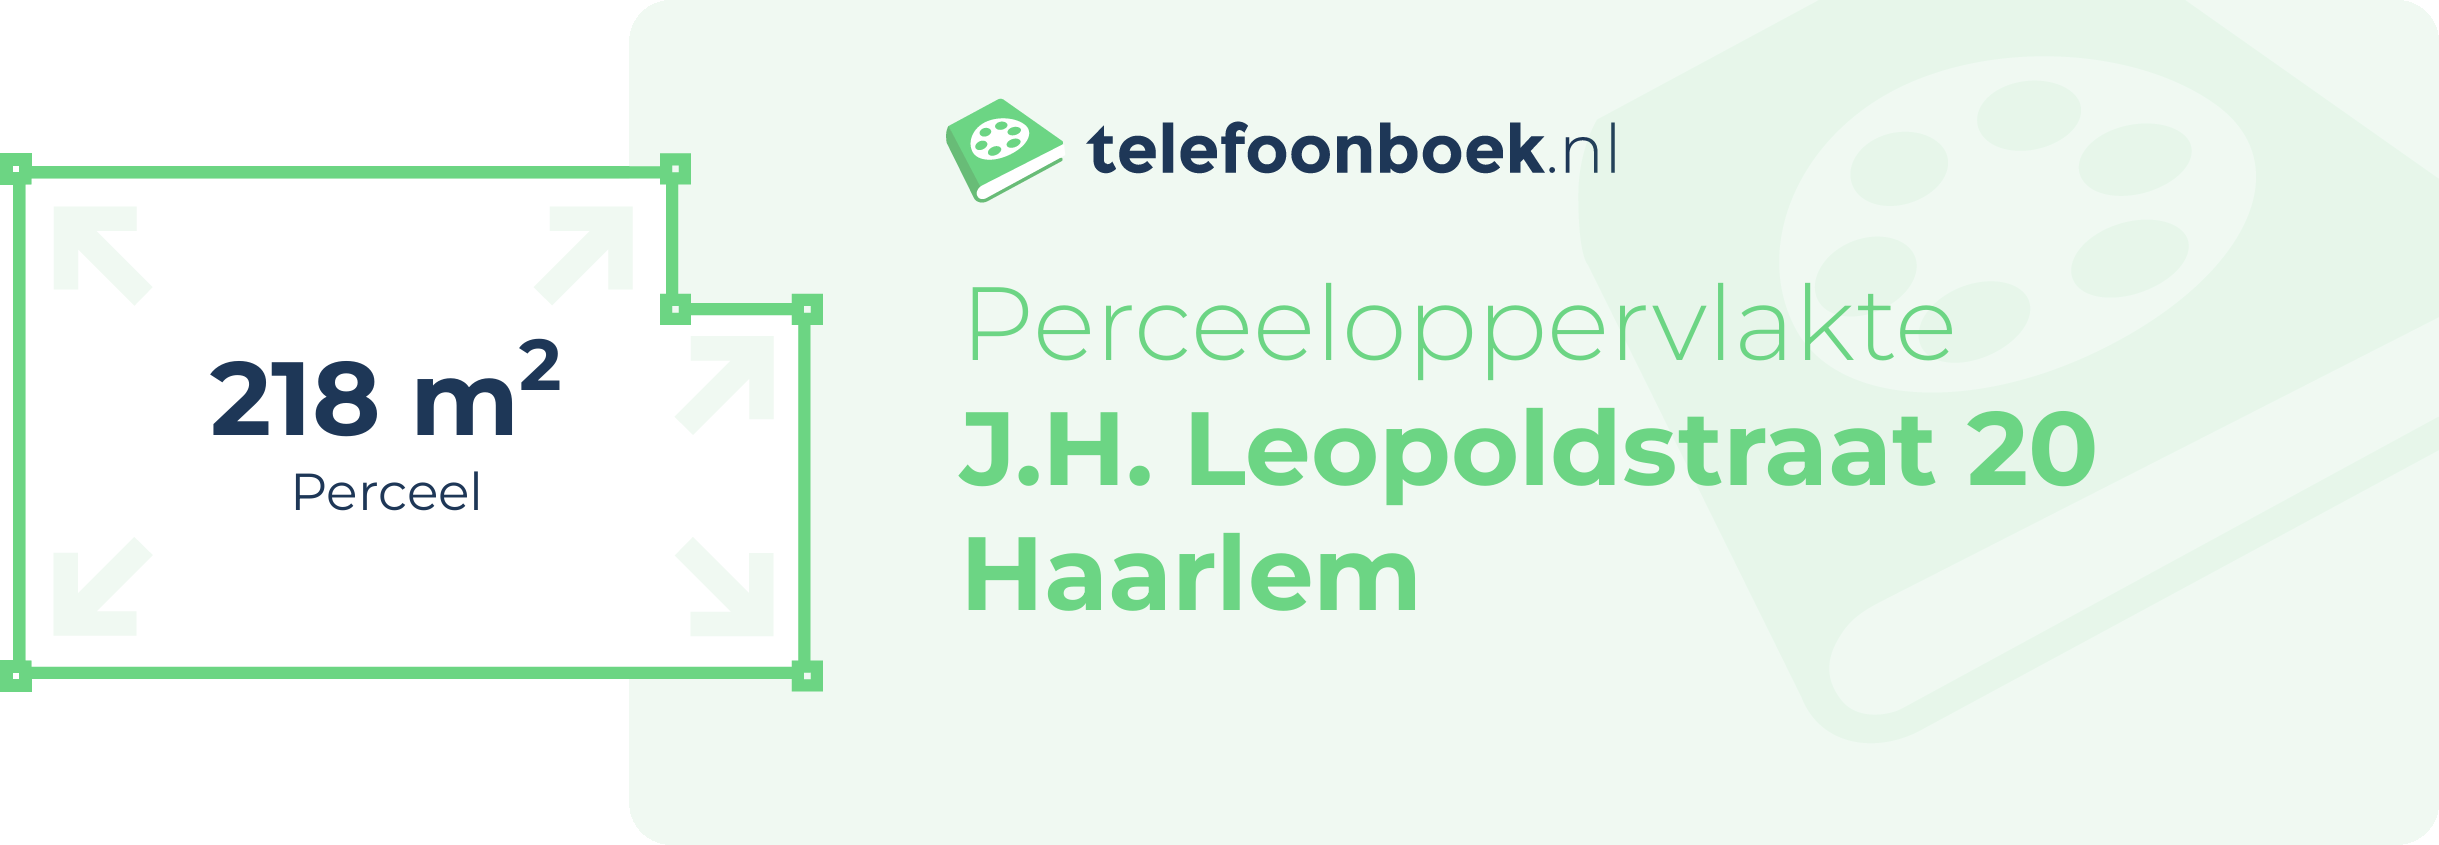 Perceeloppervlakte J.H. Leopoldstraat 20 Haarlem